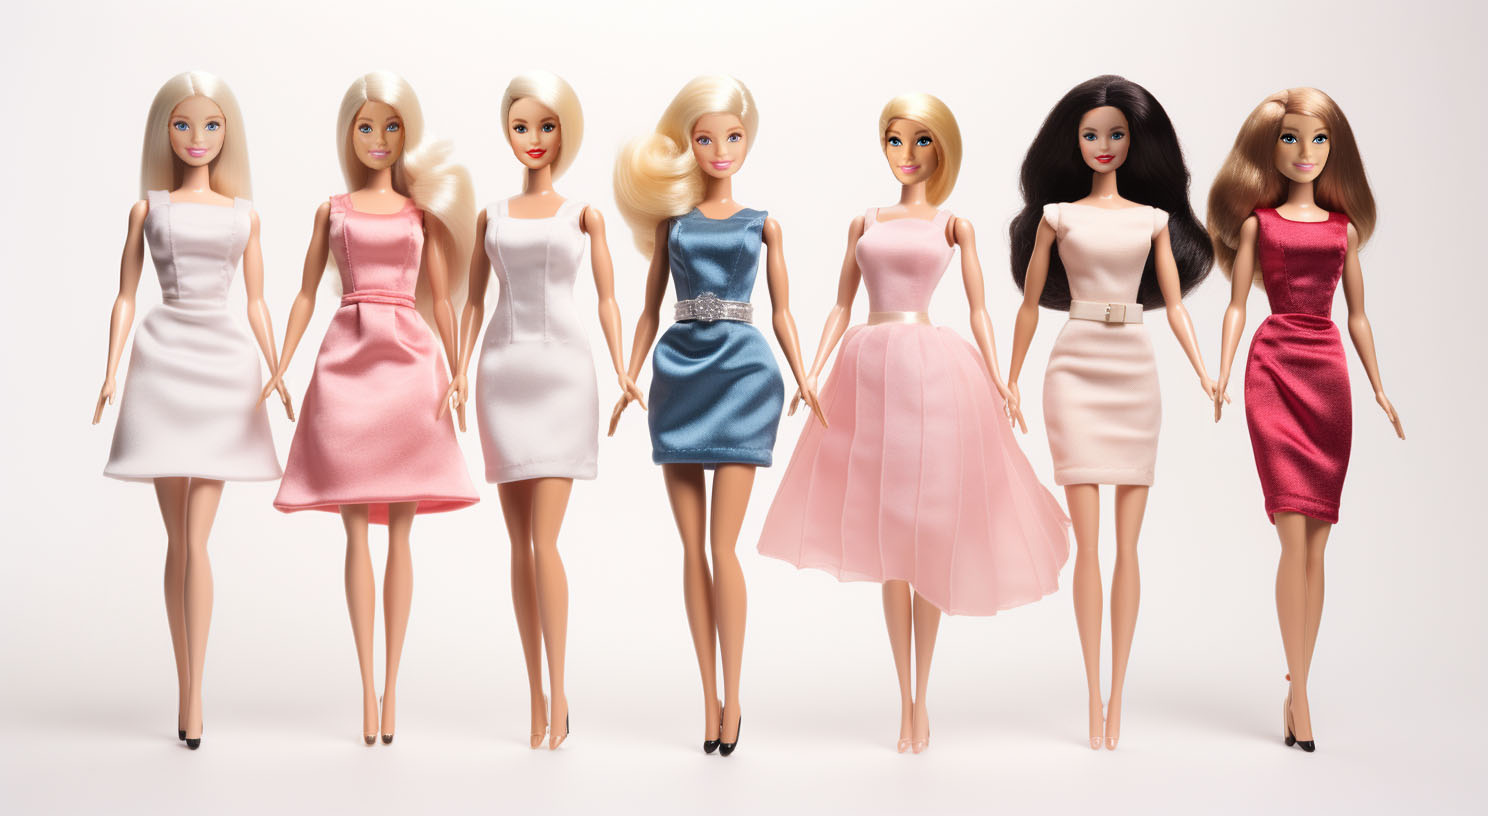 Barbie Puppen - Stärkung von Kreativität und Selbstvertrauen